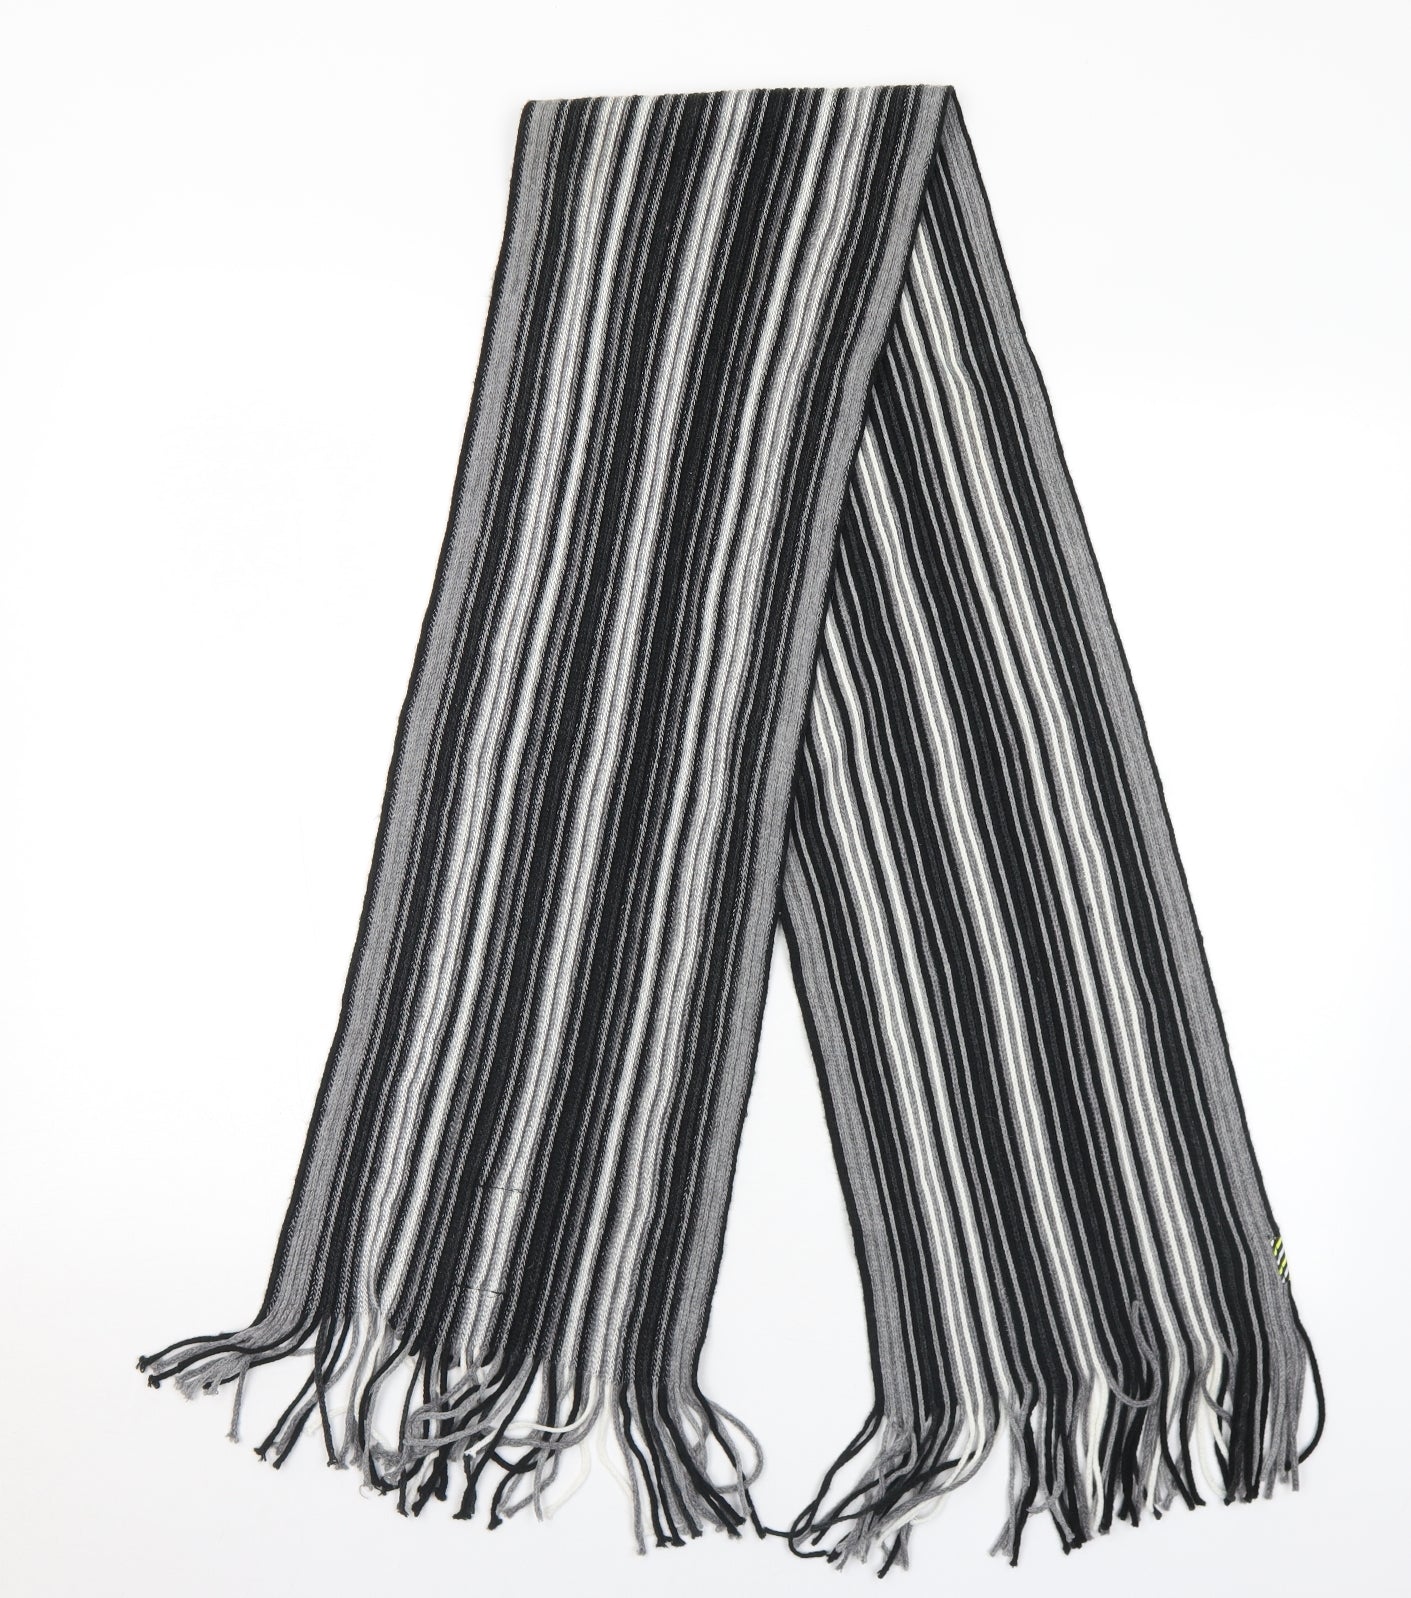 Smith & Jones Mens Grey Striped Acrylic Scarf  One Size